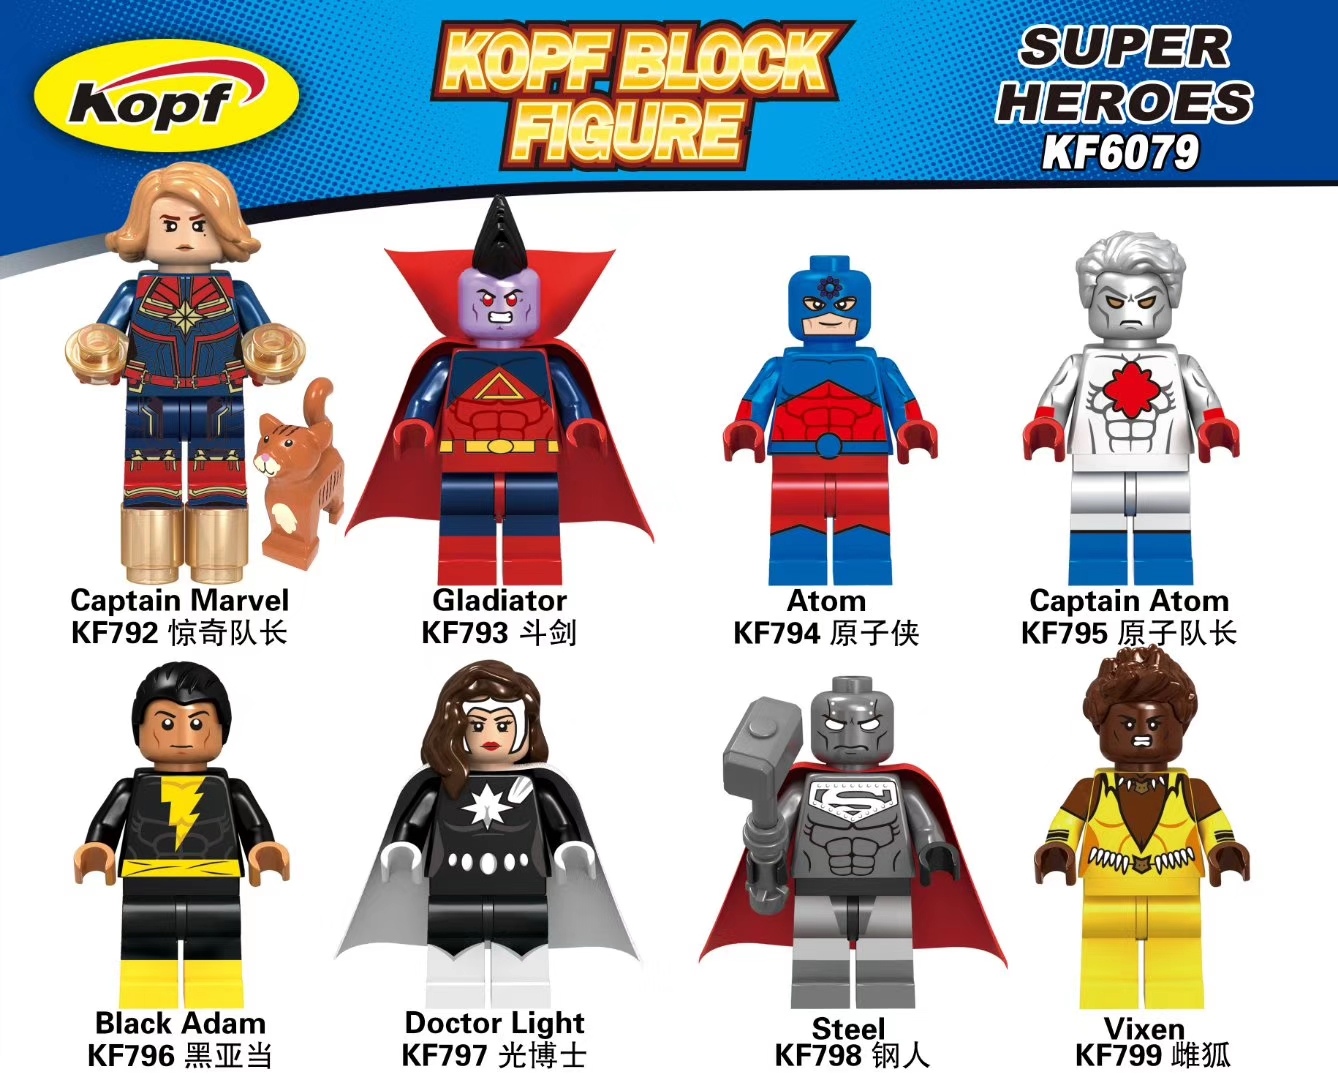 Kopf KF6079 Superheroes 